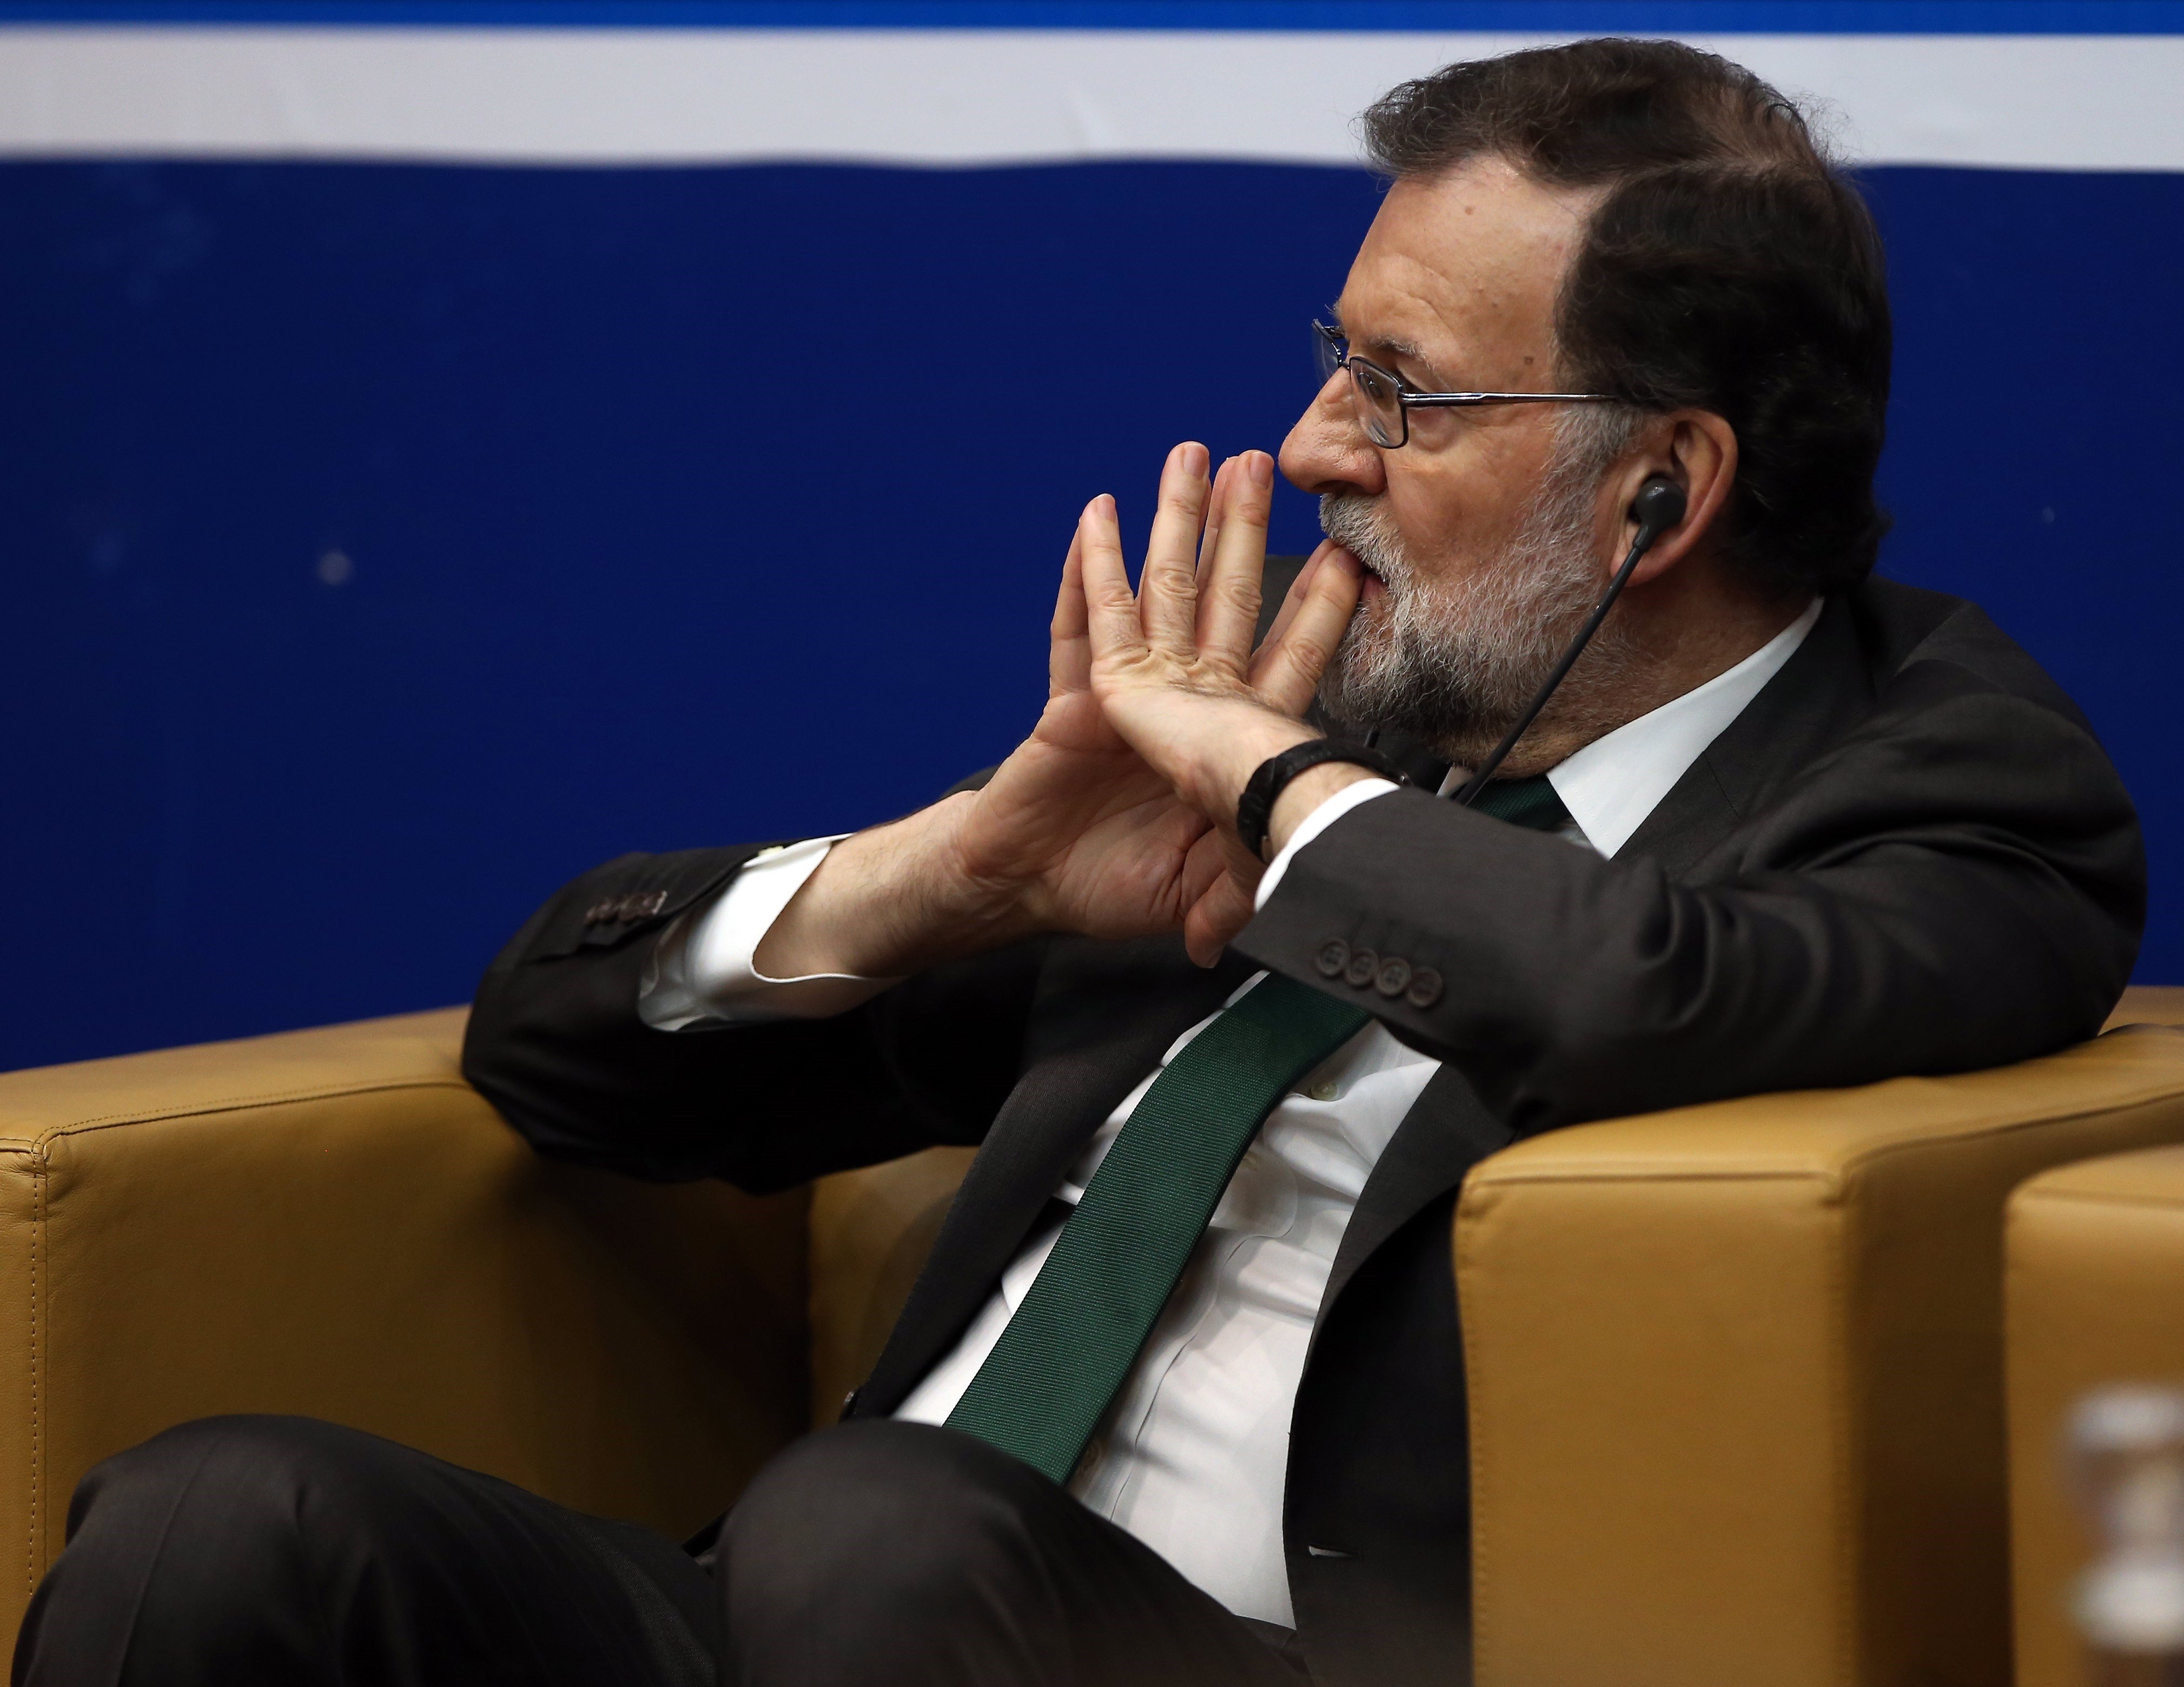 Vídeo: Los conocimientos de Rajoy sobre política europea